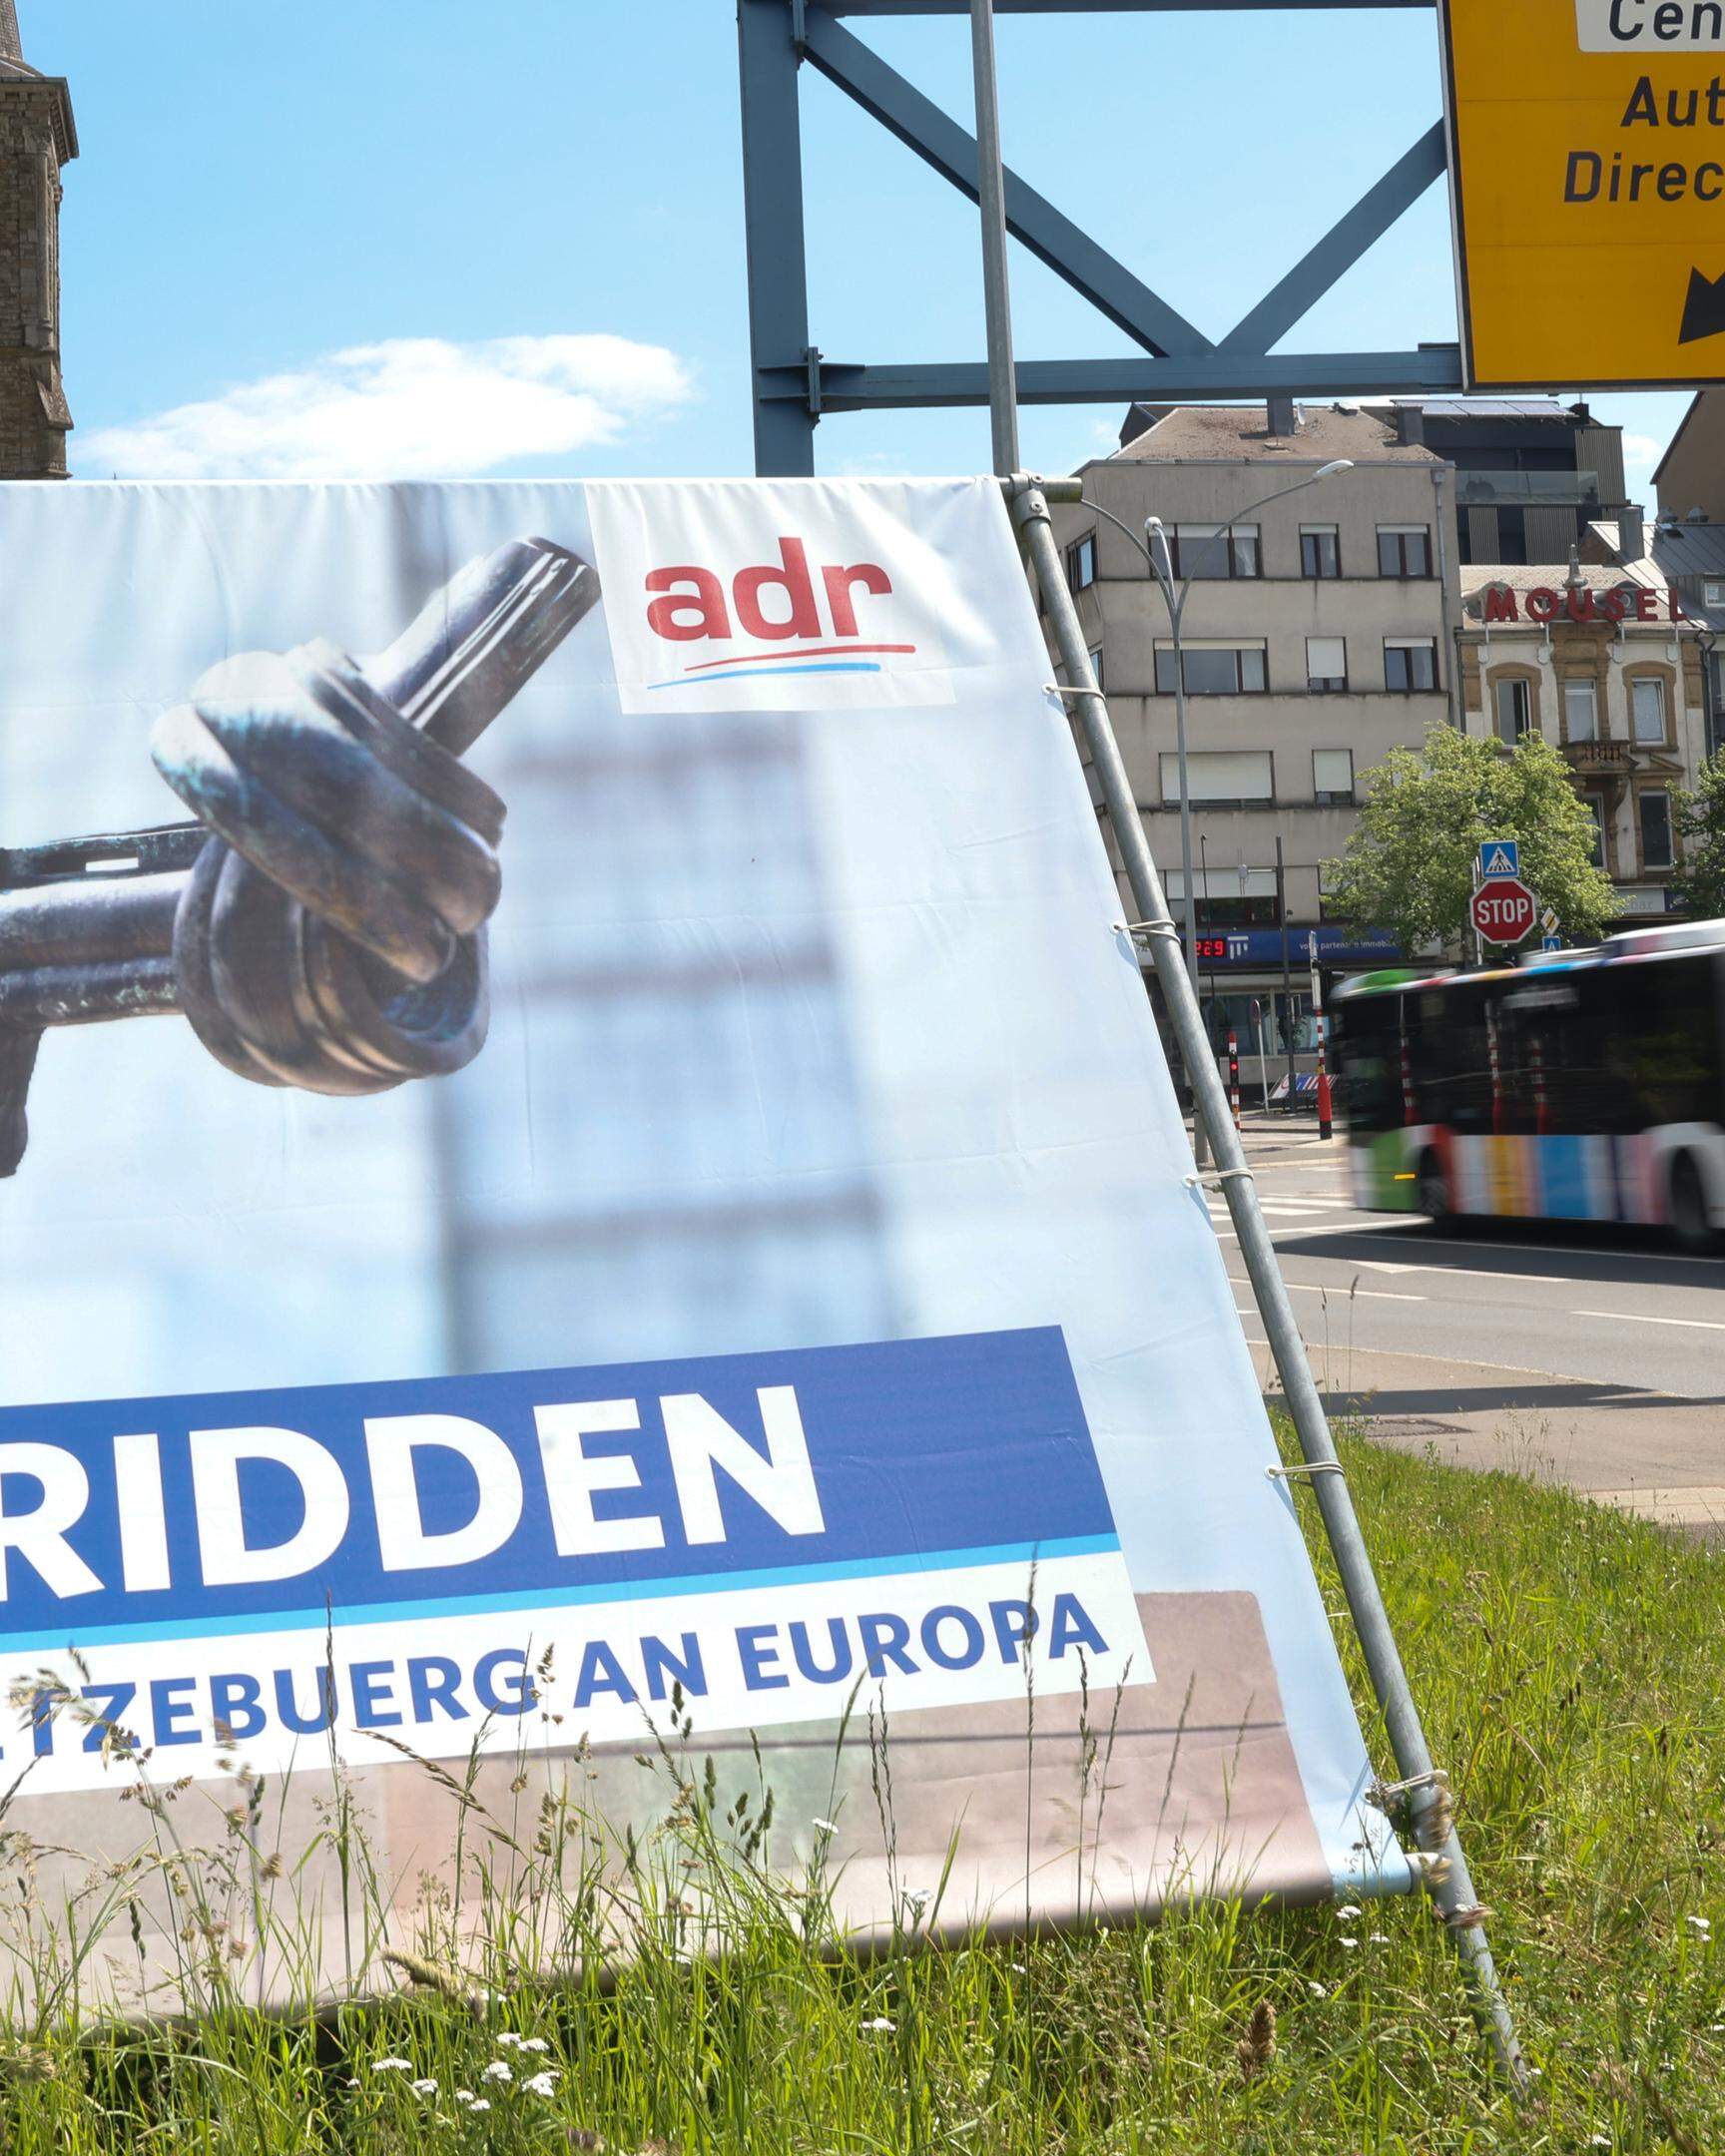 Verschwinden die ADR-Wahlplakate, deren Bildmotiv ungefragt benutzt wurde? Anwälte geben der Partei eine Frist, sie bis zum 31. Mai wegzuräumen. Diese Aufnahme entstand an der Porte de Hollerich.